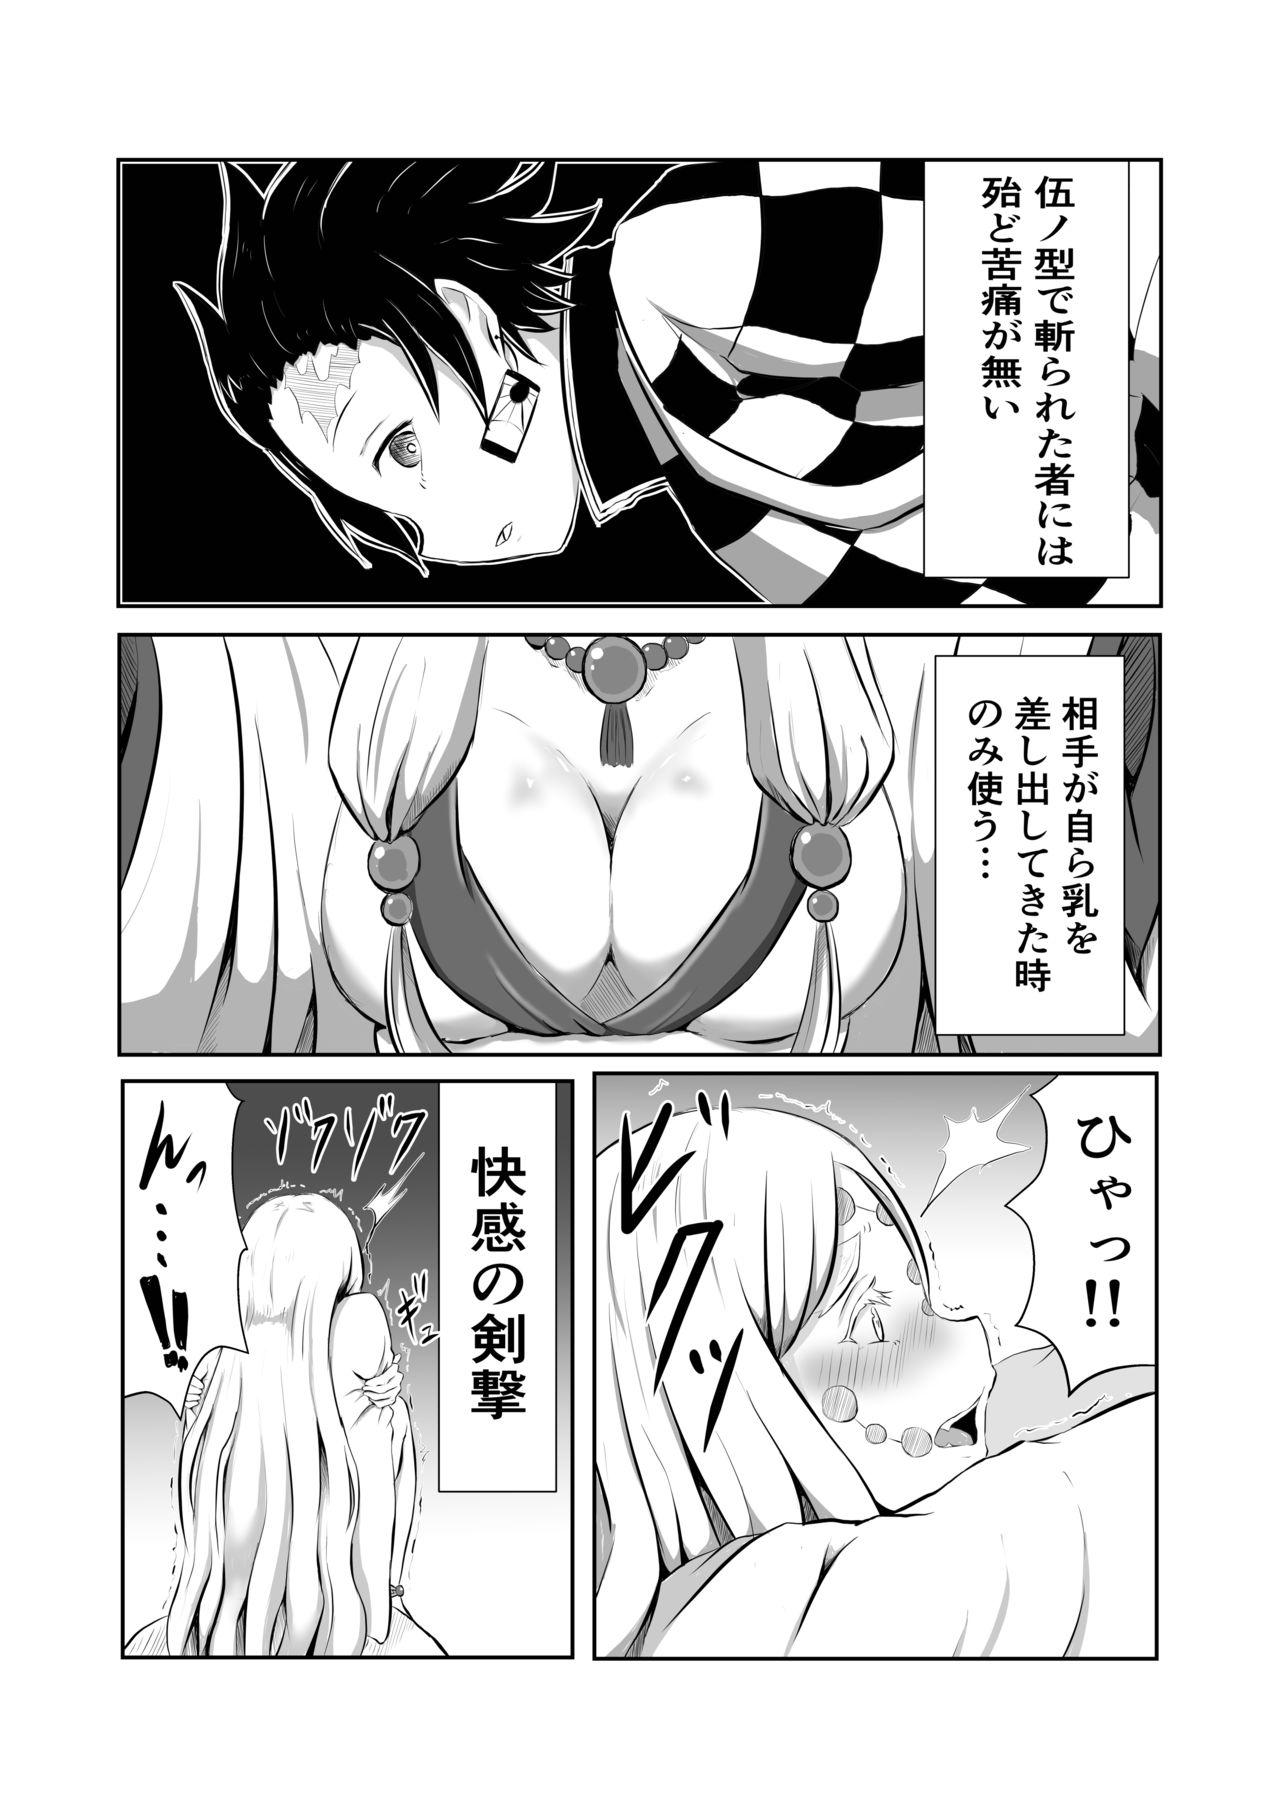 New Hinokami Sex. - Kimetsu no yaiba | demon slayer Foot - Page 4